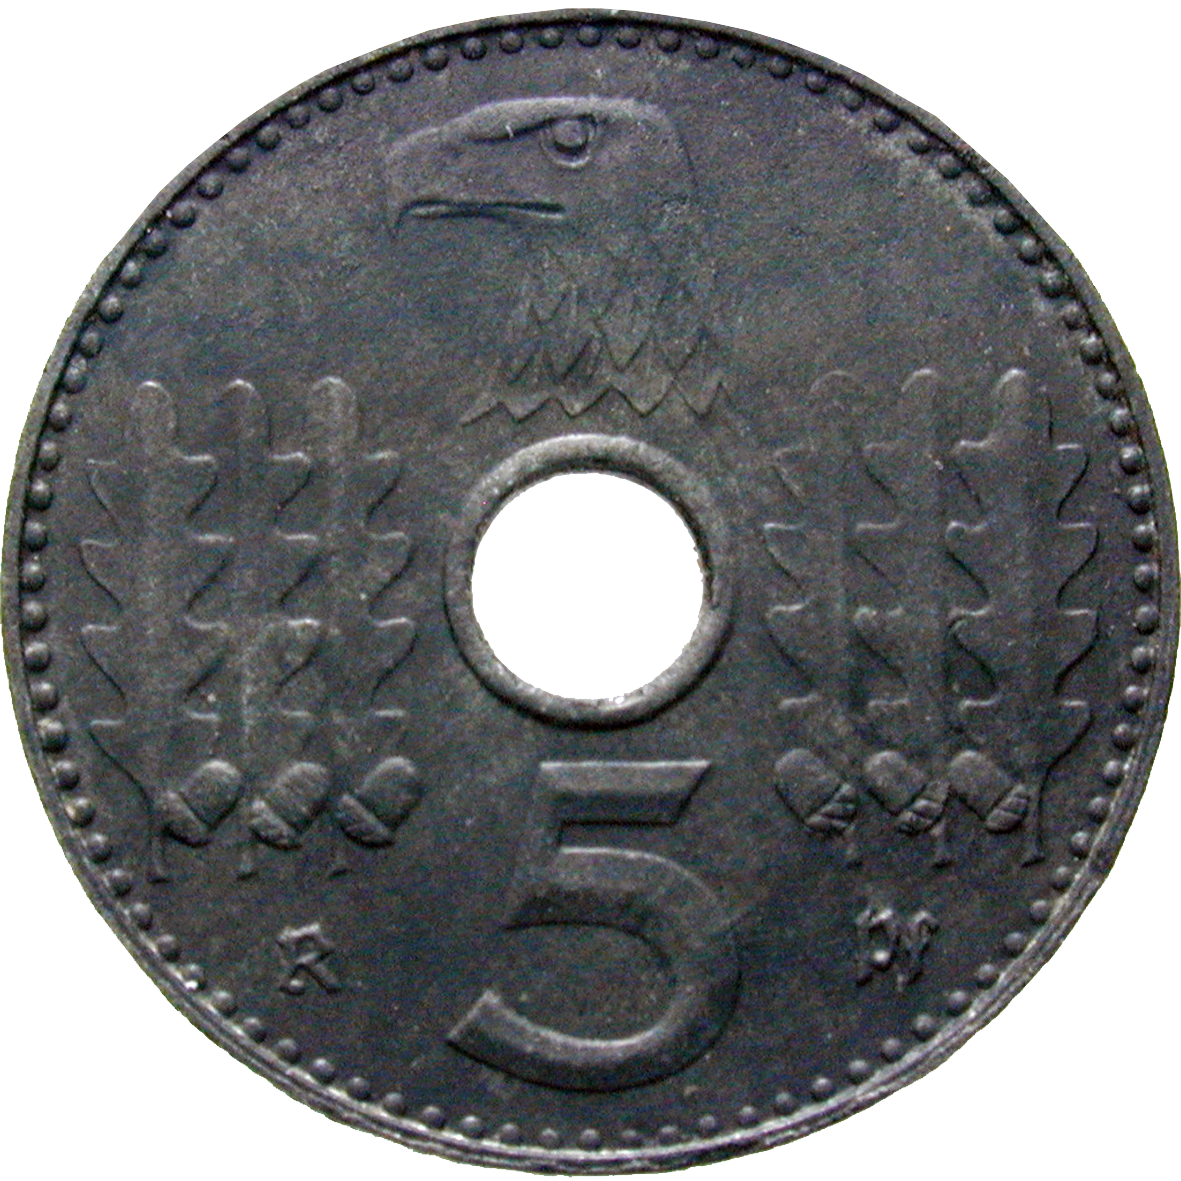 German Third Reich, 5 Reichspfennig, Military Issue 1940 (obverse)